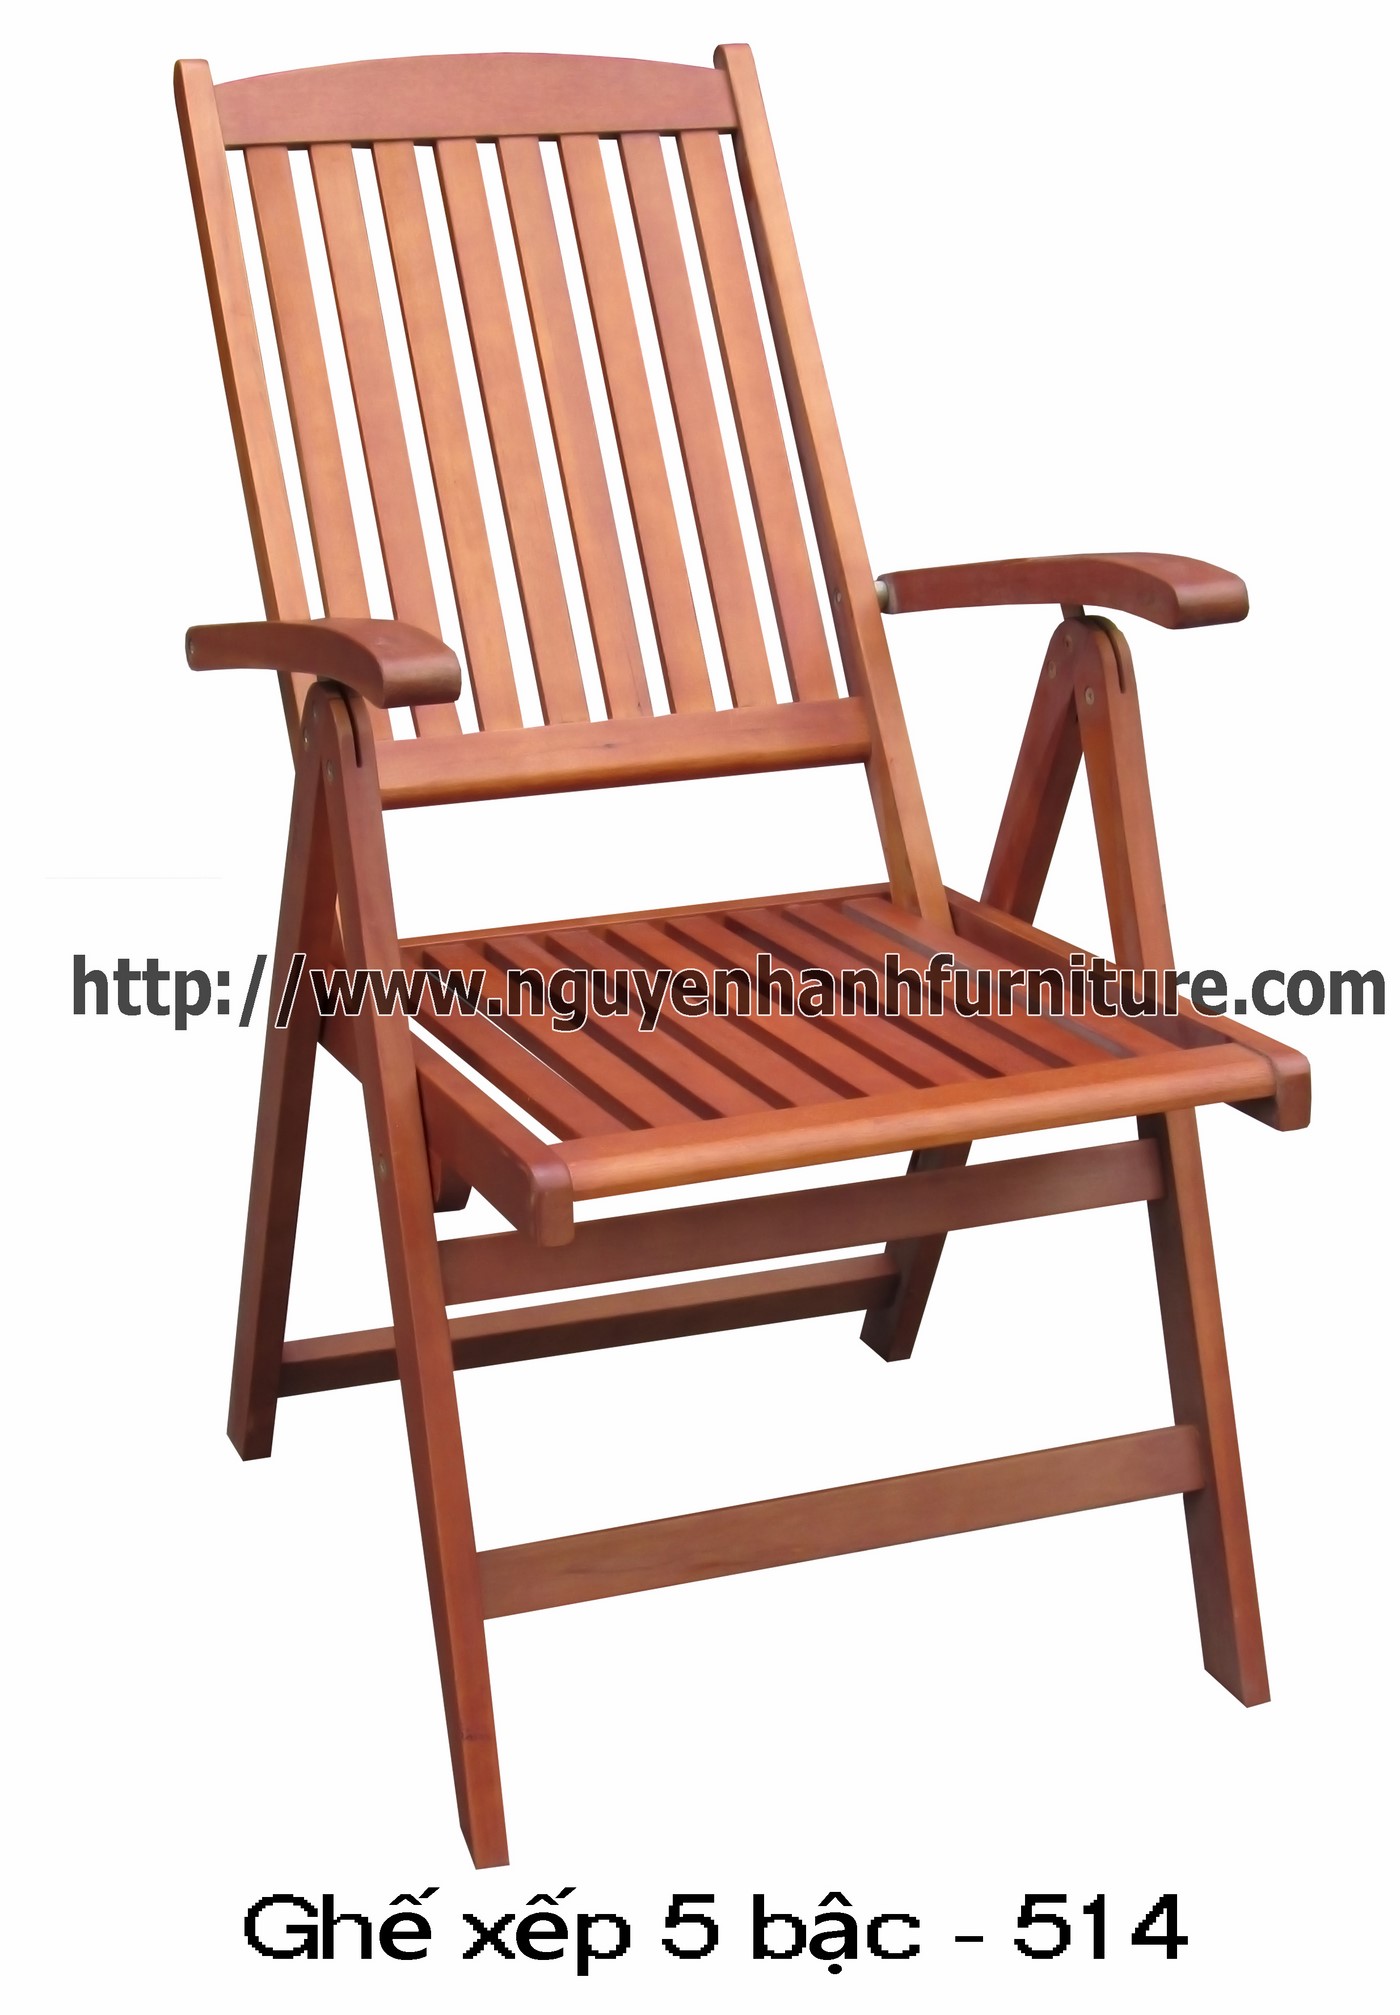 Name product: 515 chair - Description: